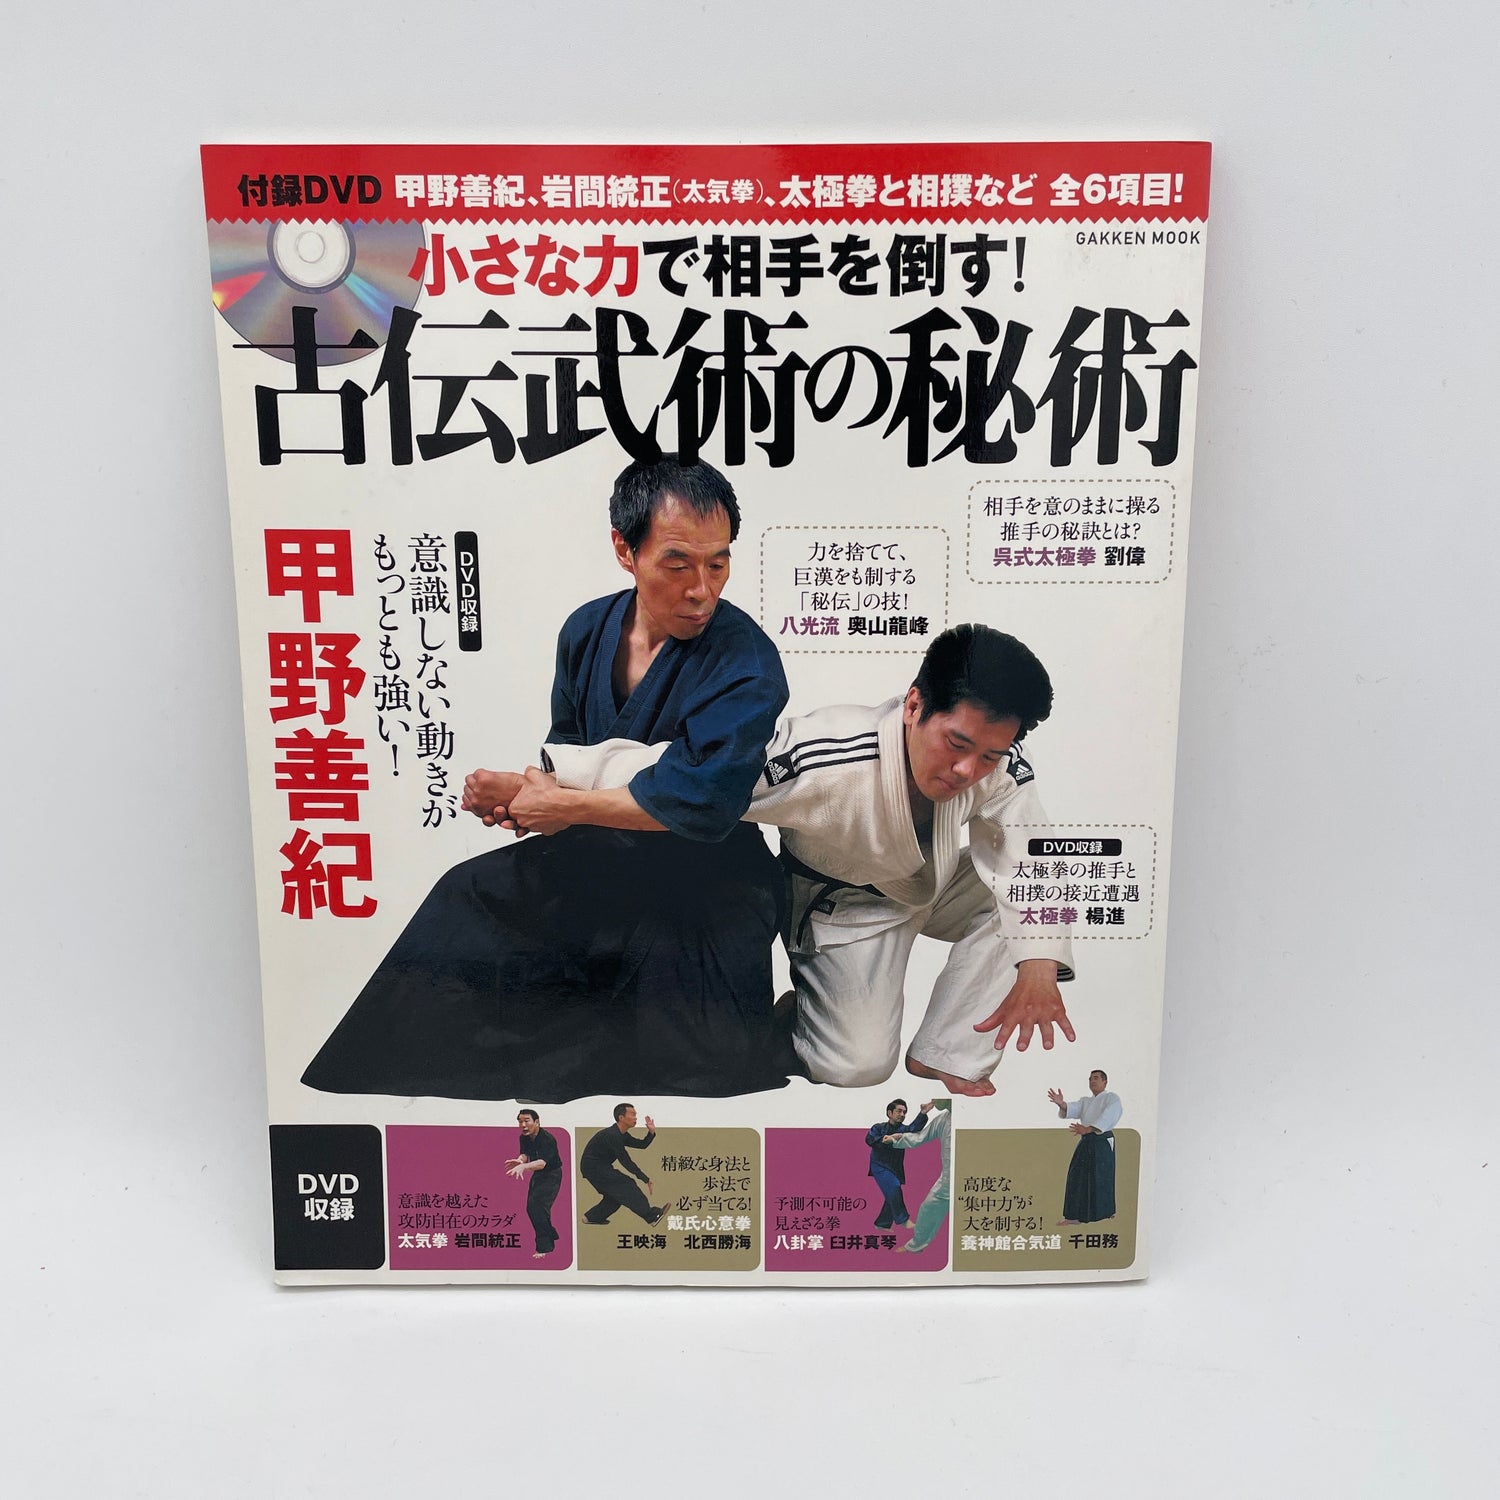 Mystery of Kobujutsu Book & DVD by Yoshinori Kono (Preowned)